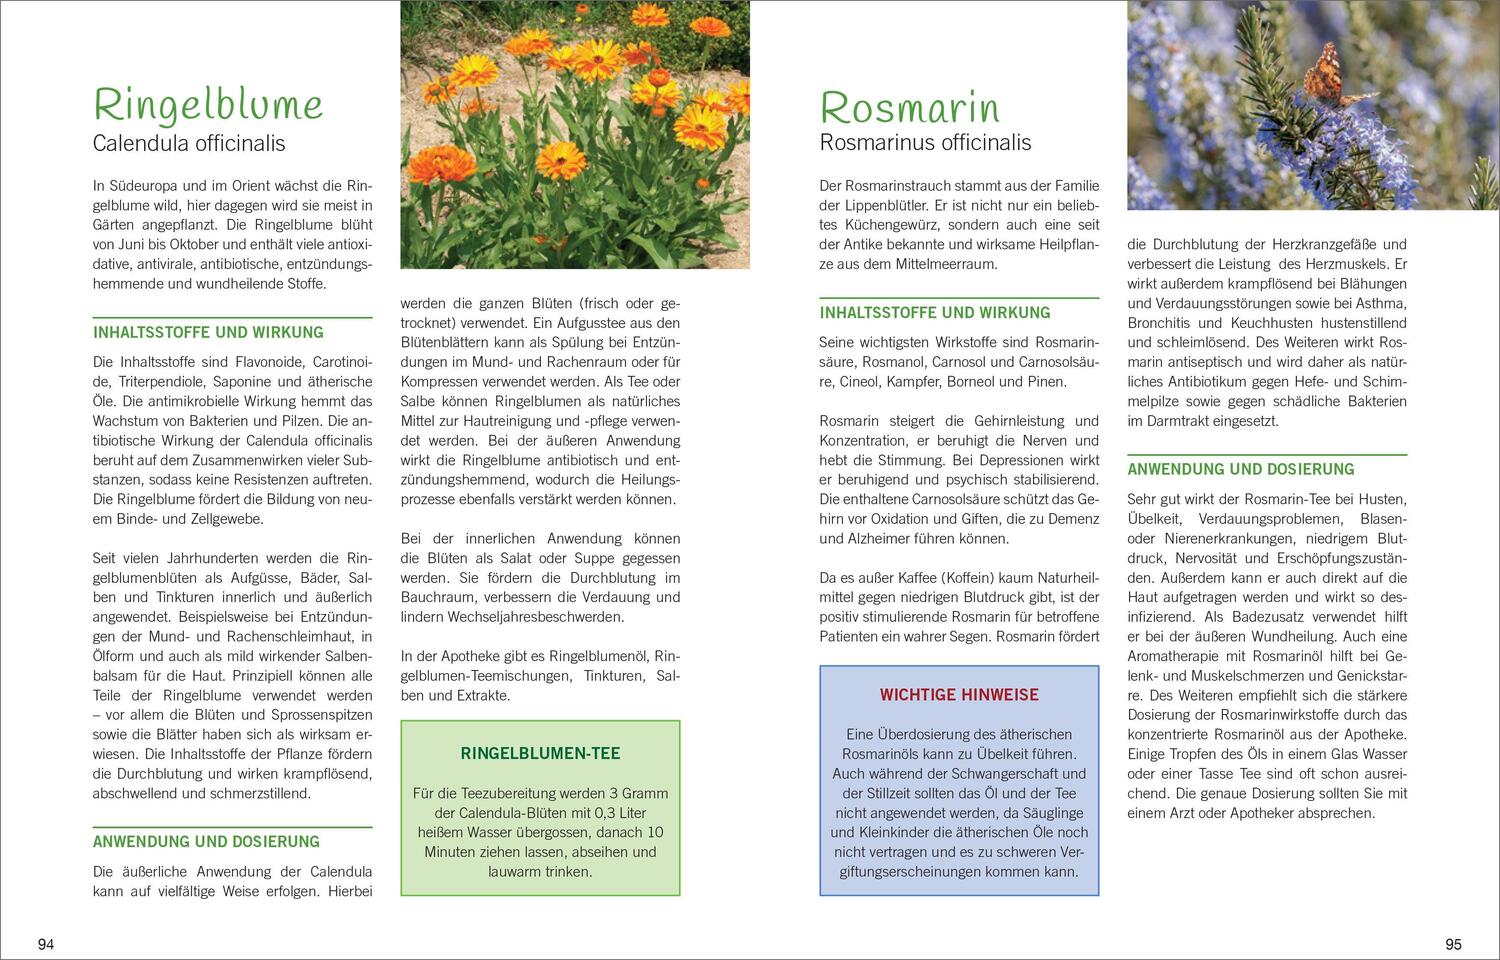 Bild: 9783809439547 | Antibiotische Heilpflanzen | Über 50 Pflanzen und ihre Wirkung | Buch